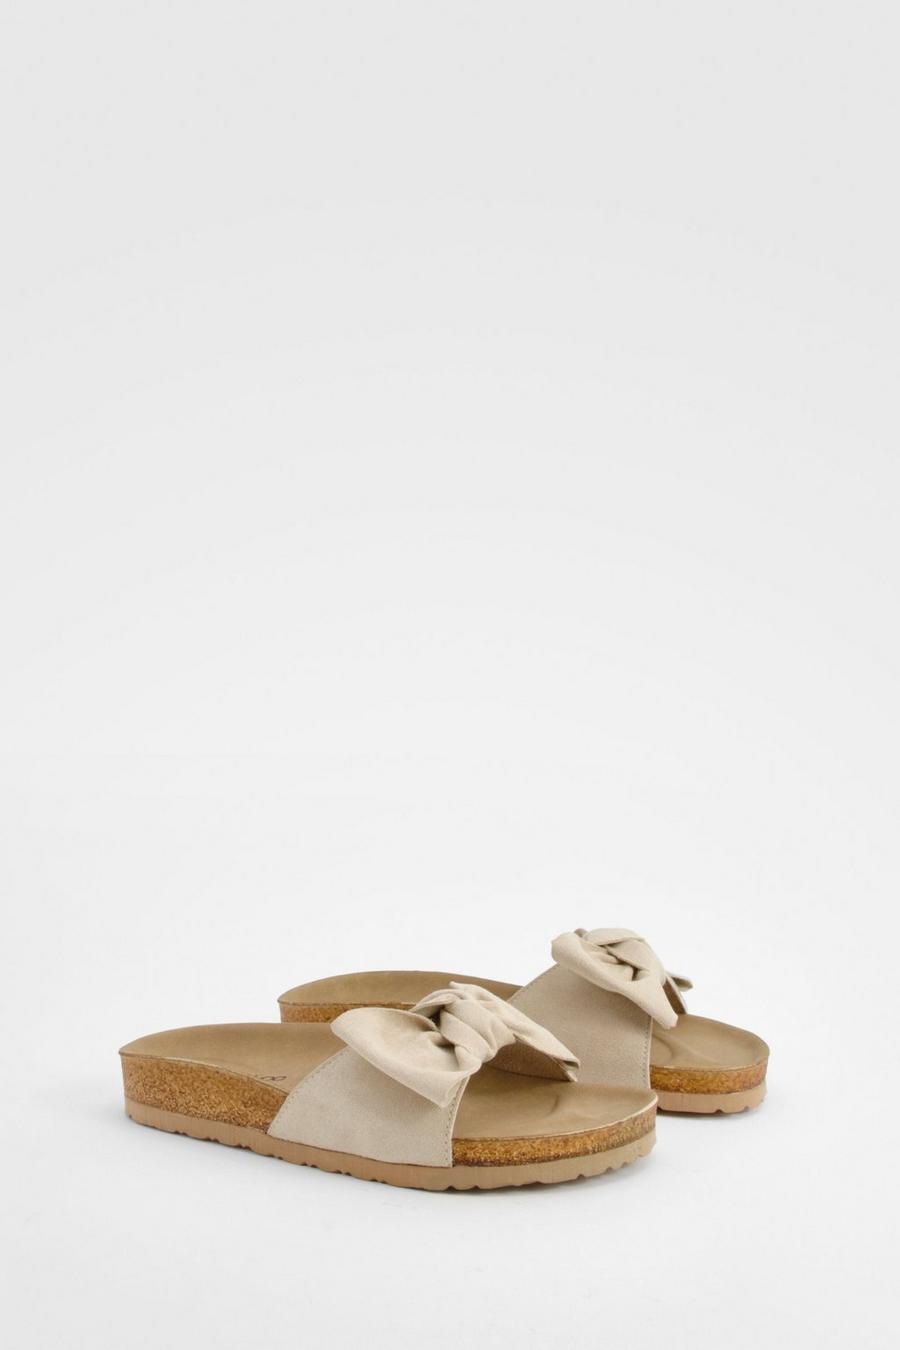 Sandalias de holgura ancha con plantilla blanda y nudo frontal, Cream